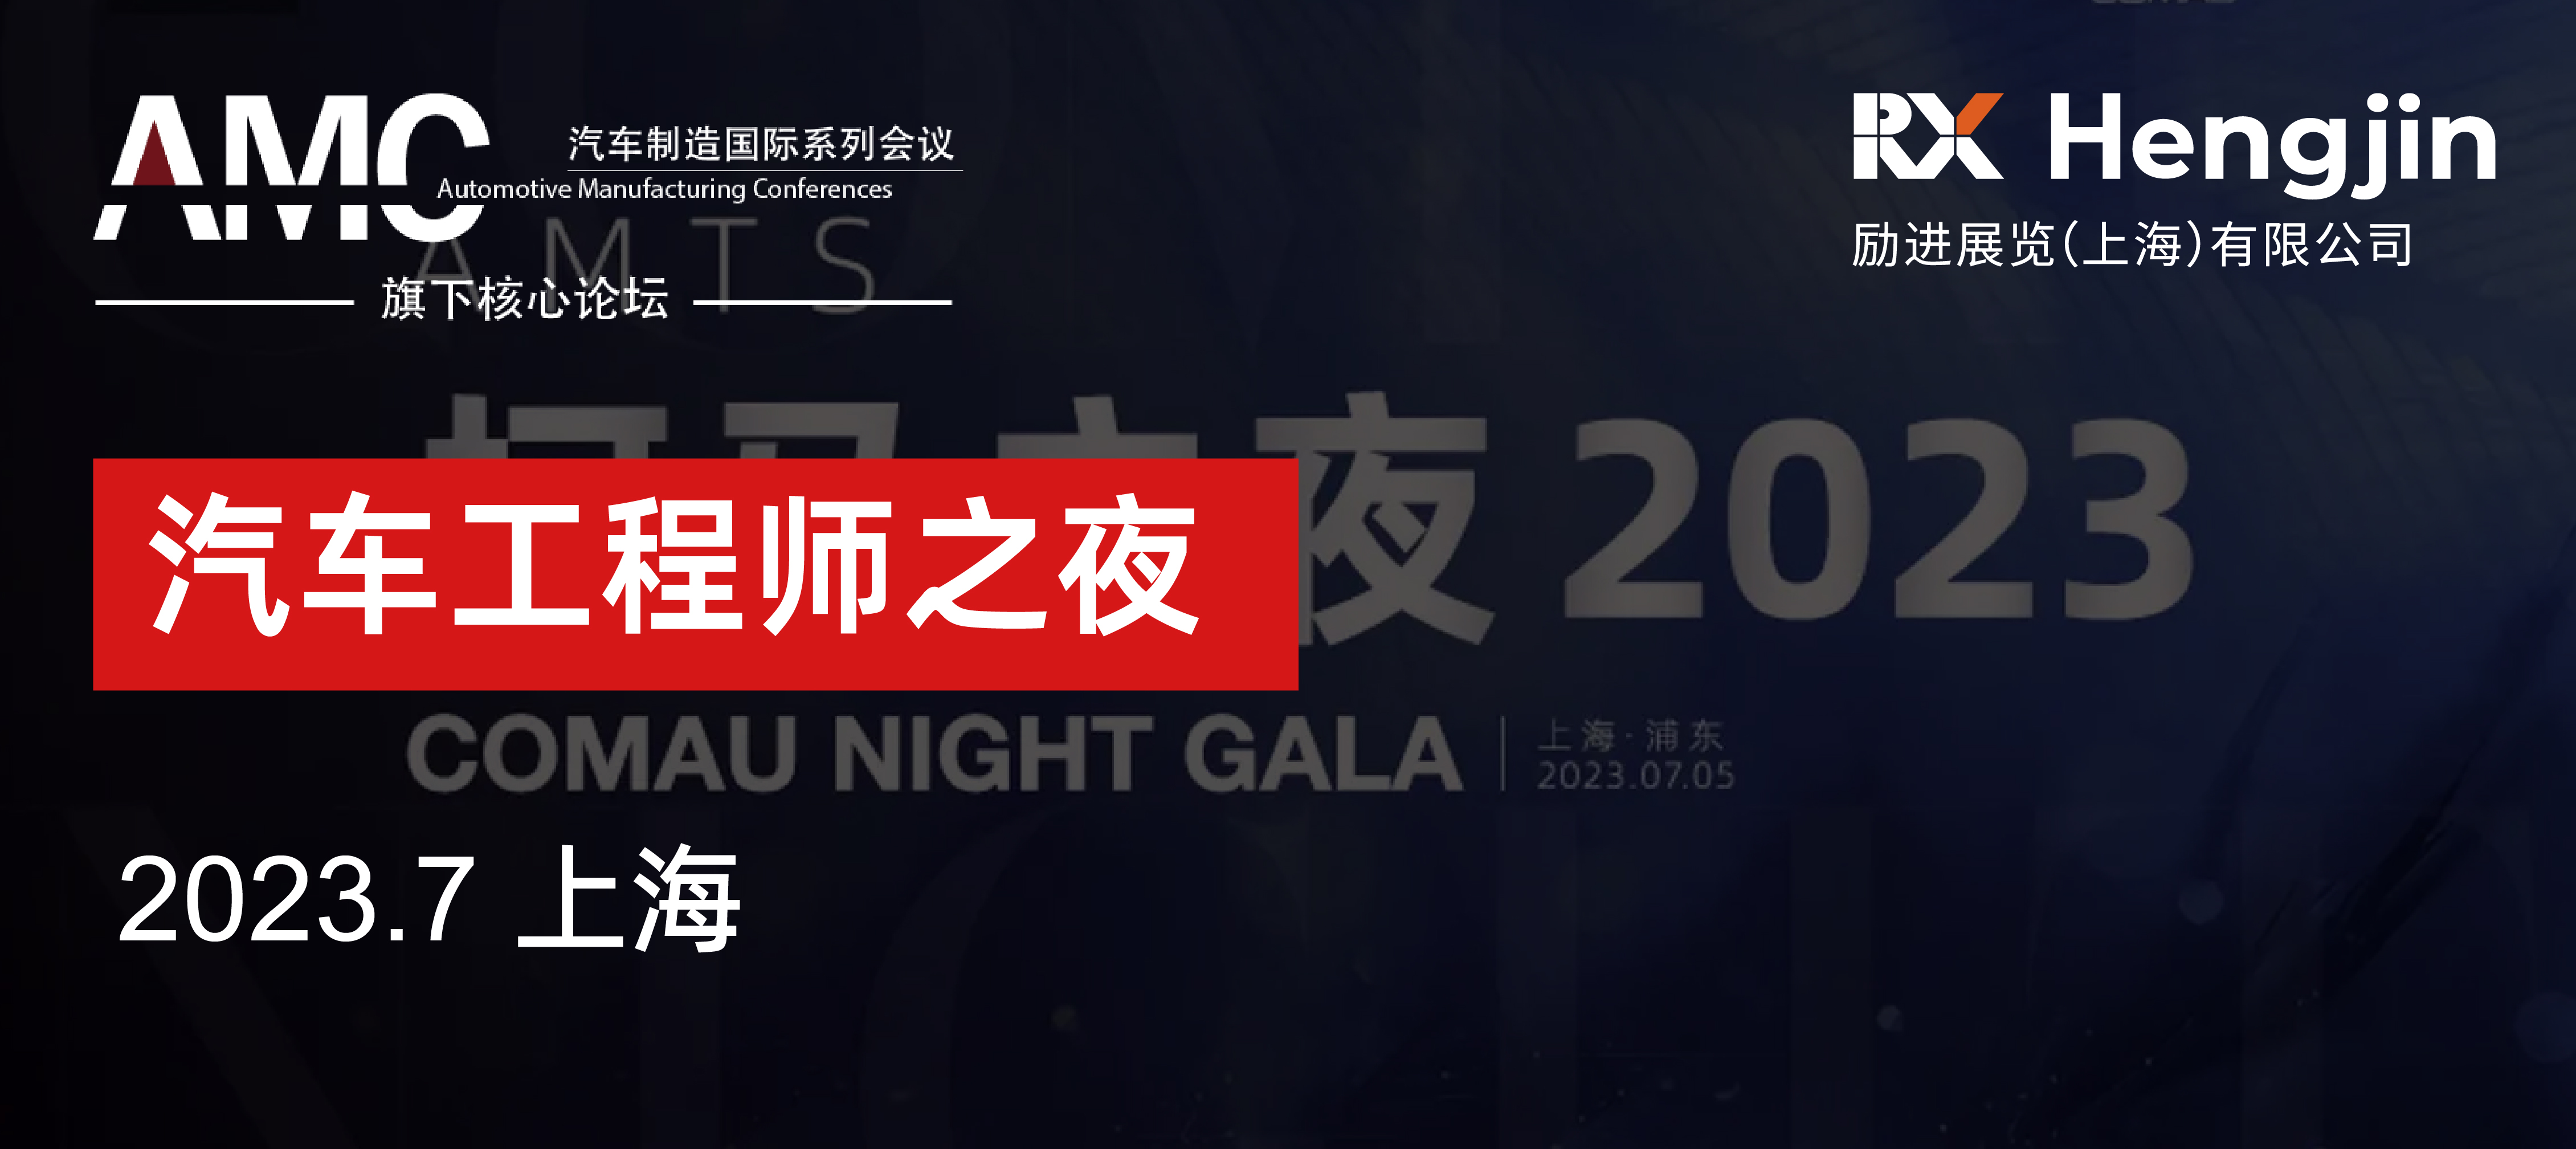 COMAU Night Gala 2023